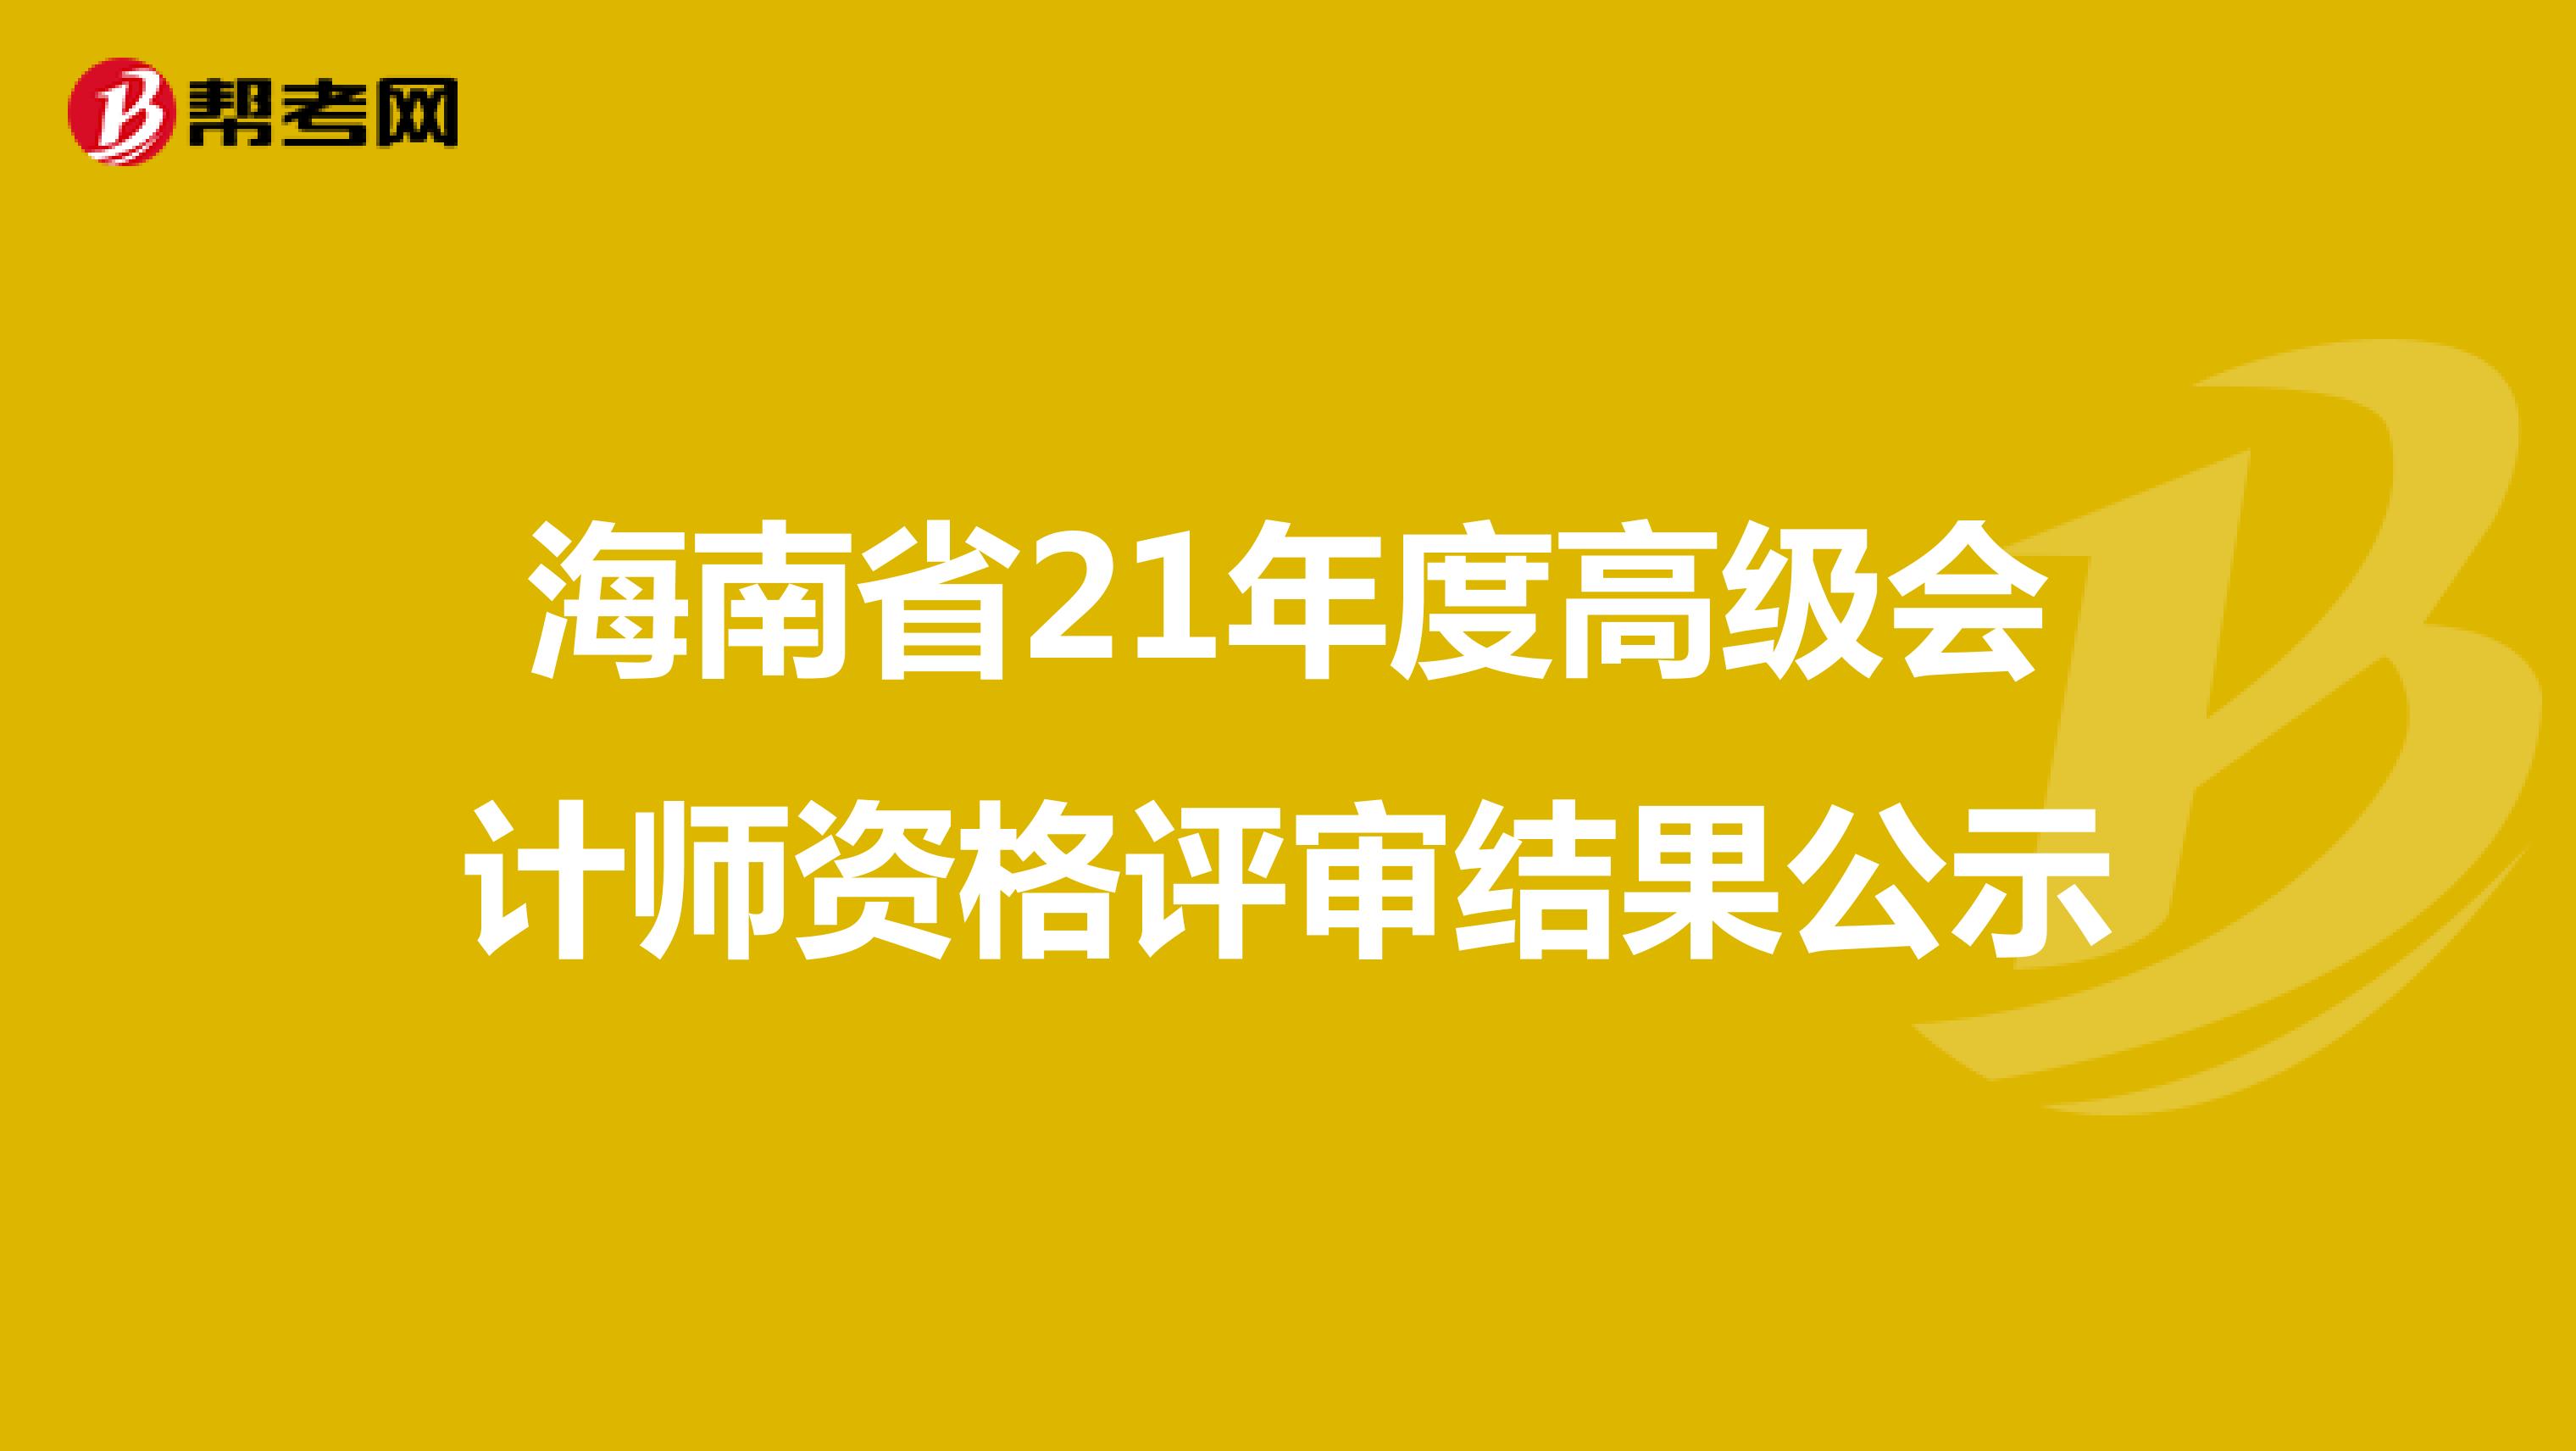 海南省21年度高级会计师资格评审结果公示